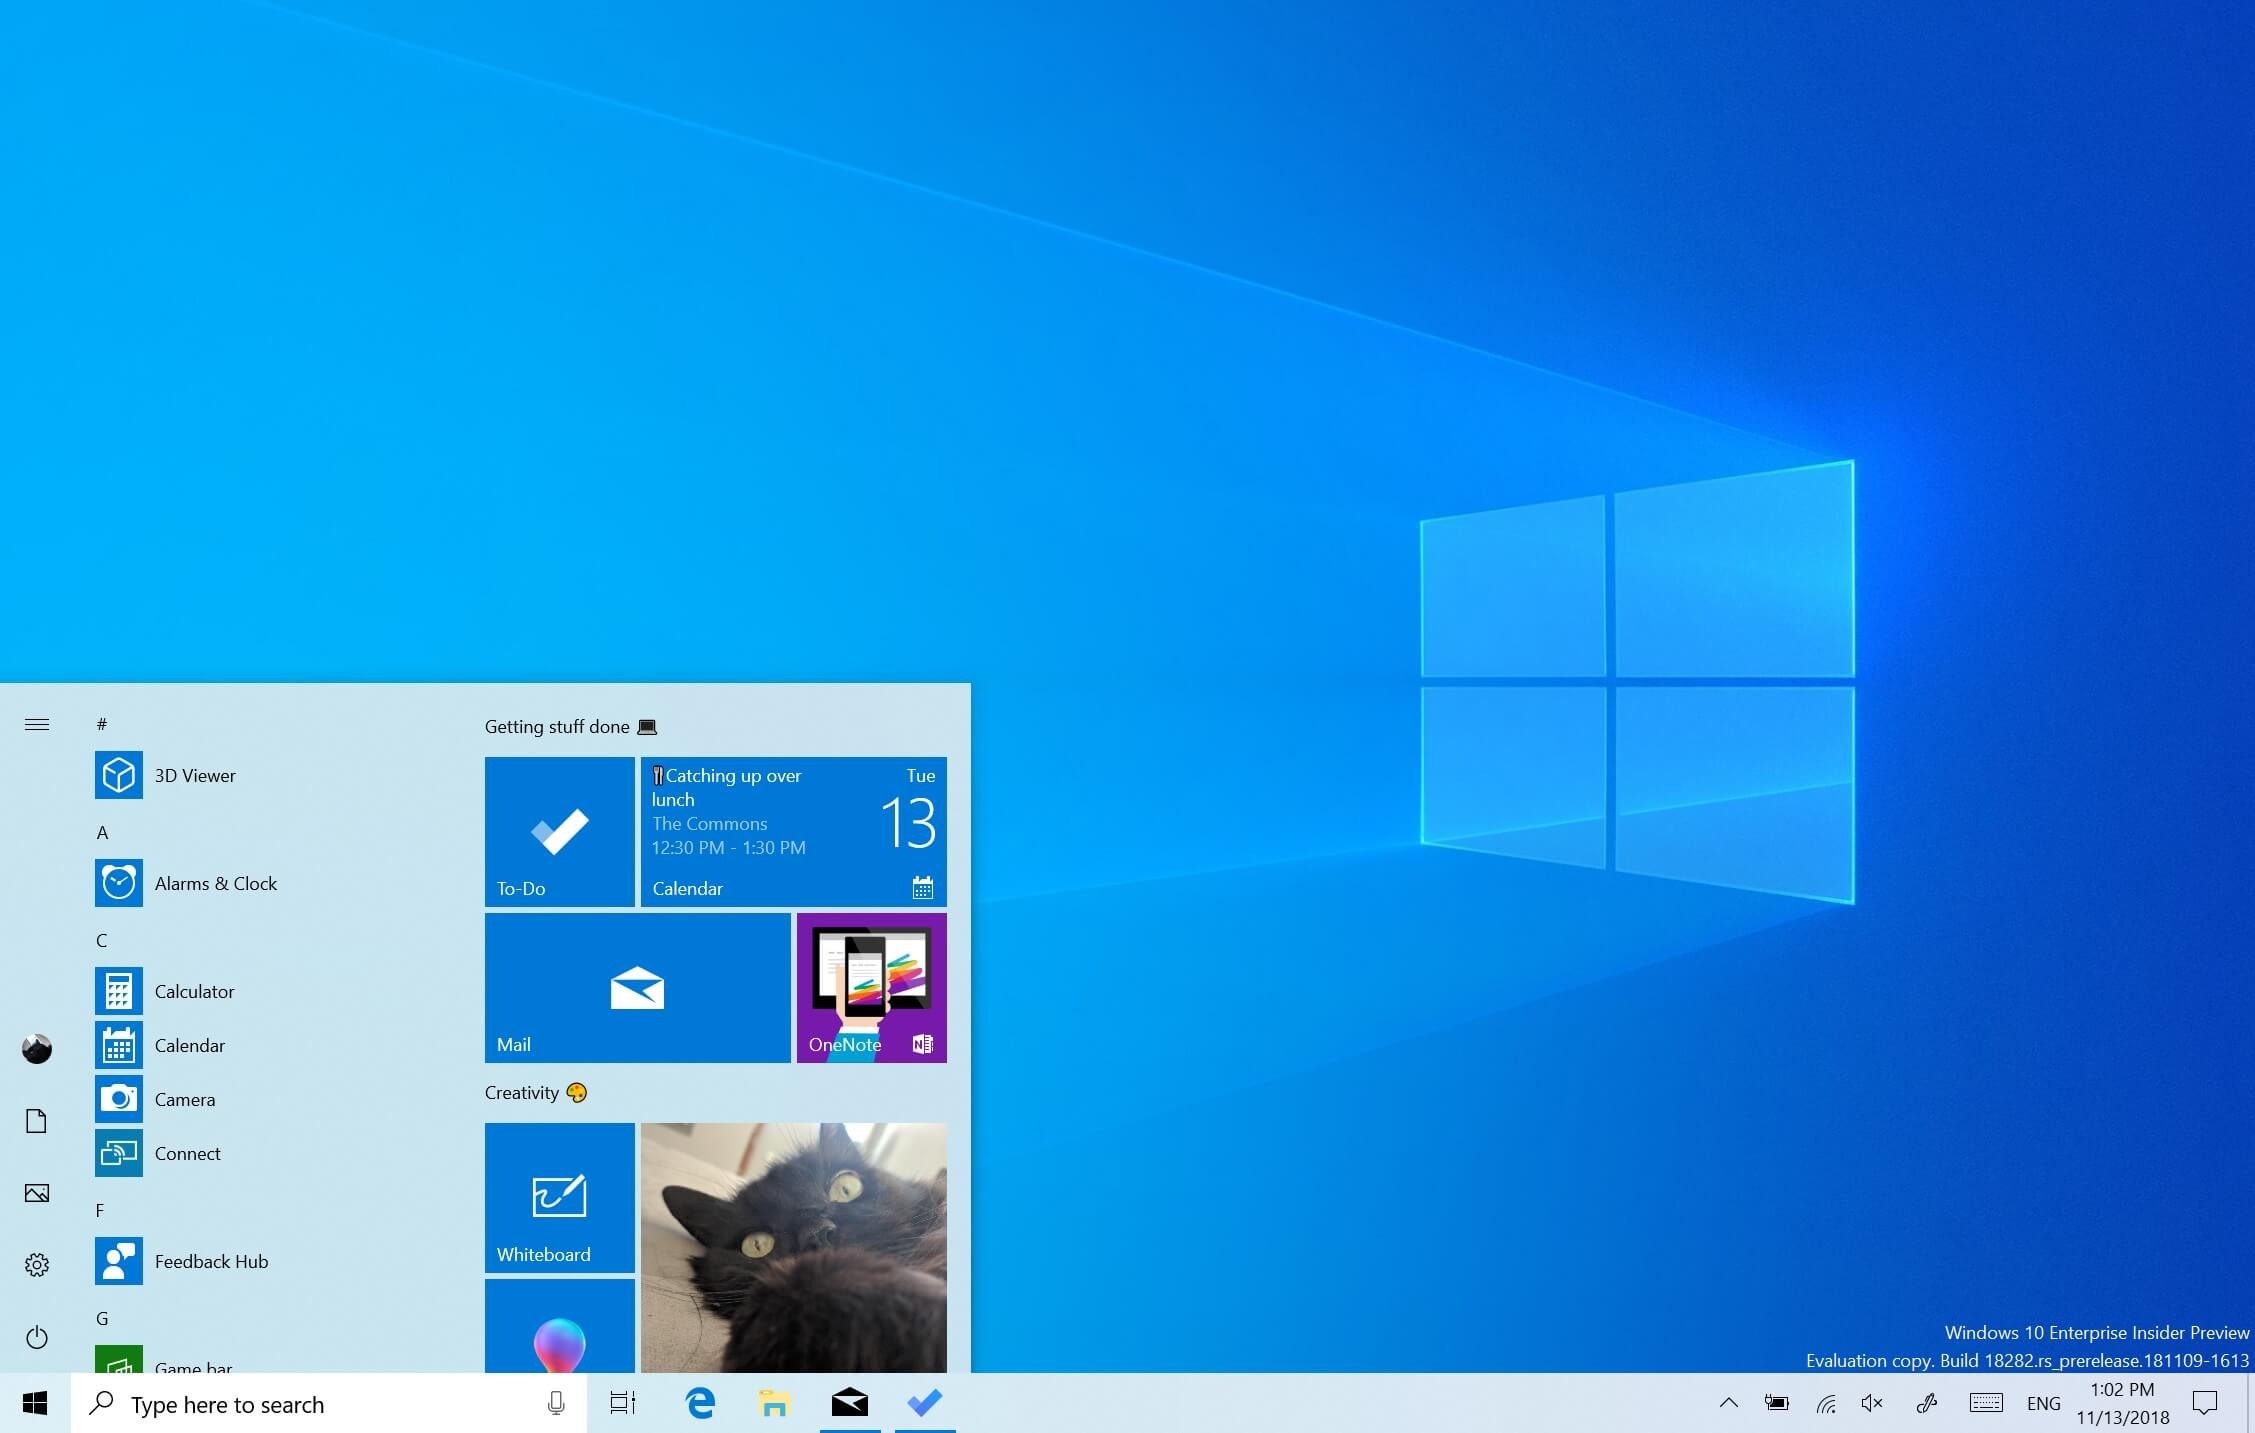 Windows 10 20H1